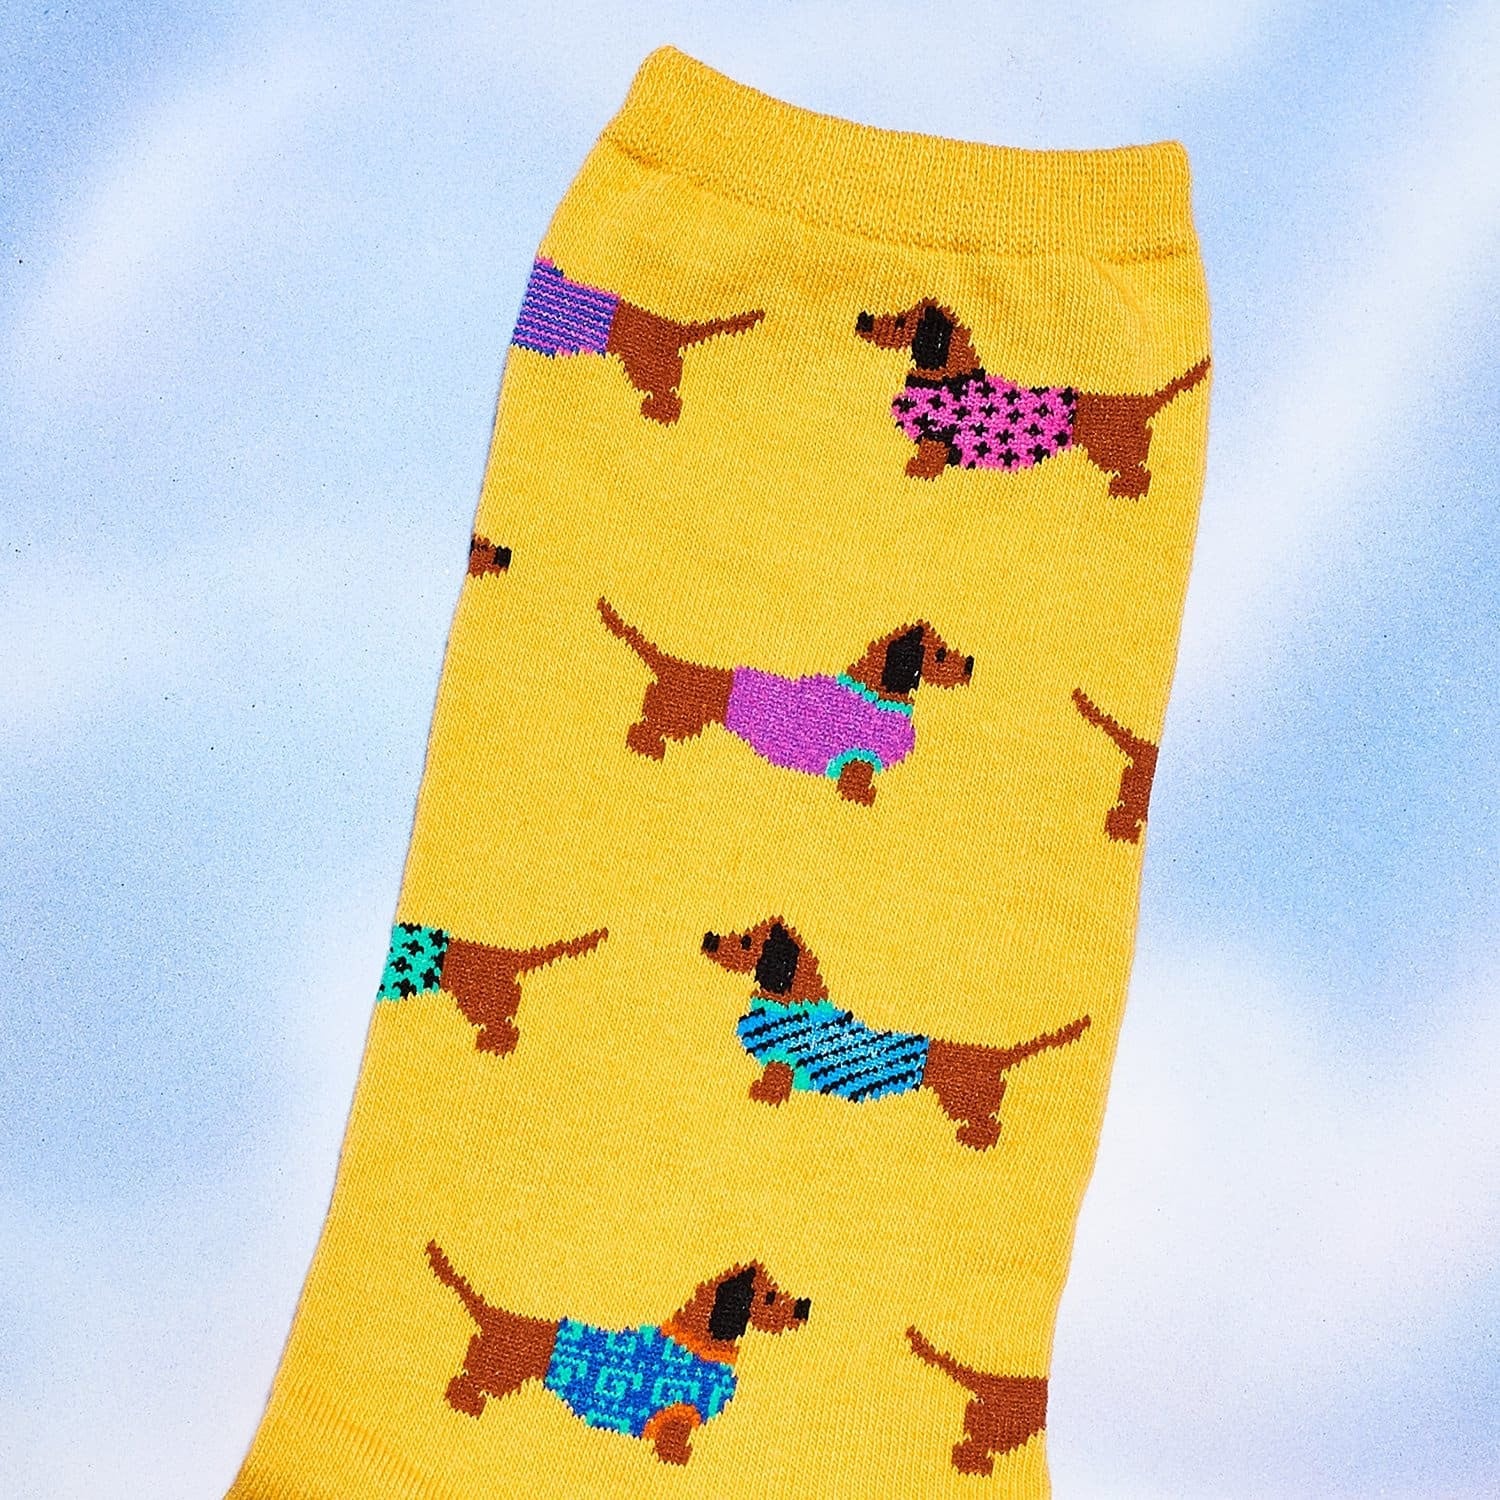 Haute Dog - Women's Novelty Socks